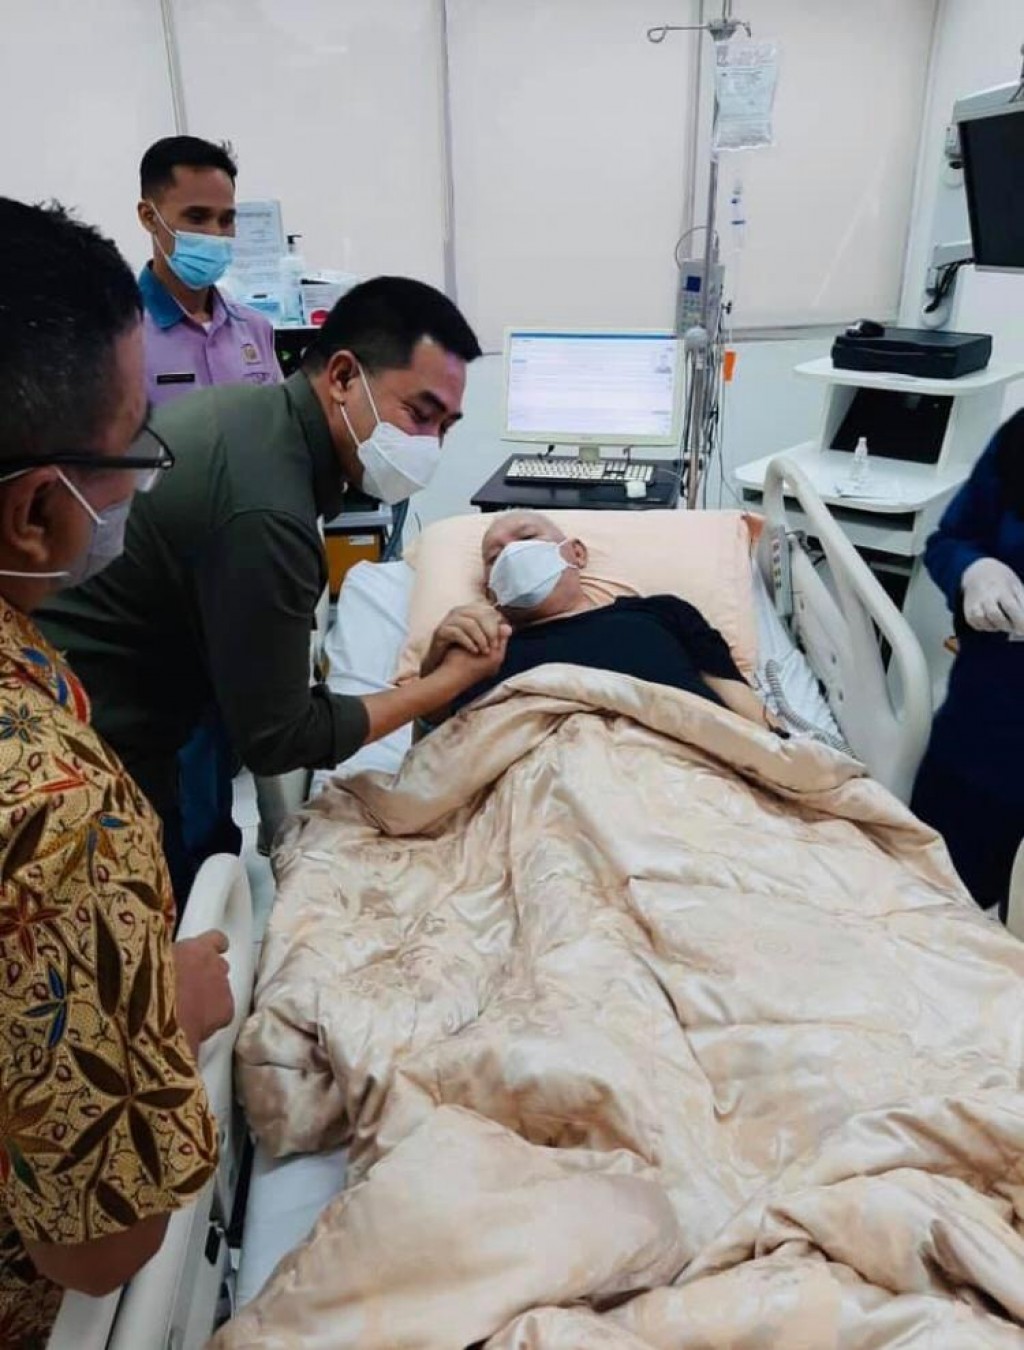 Jenguk Kondisi Kesehatan Mantan Gubernur Kaltim di Jakarta, Andi Harun Mohon Doa Untuk Kesembuhan Awang Faroek